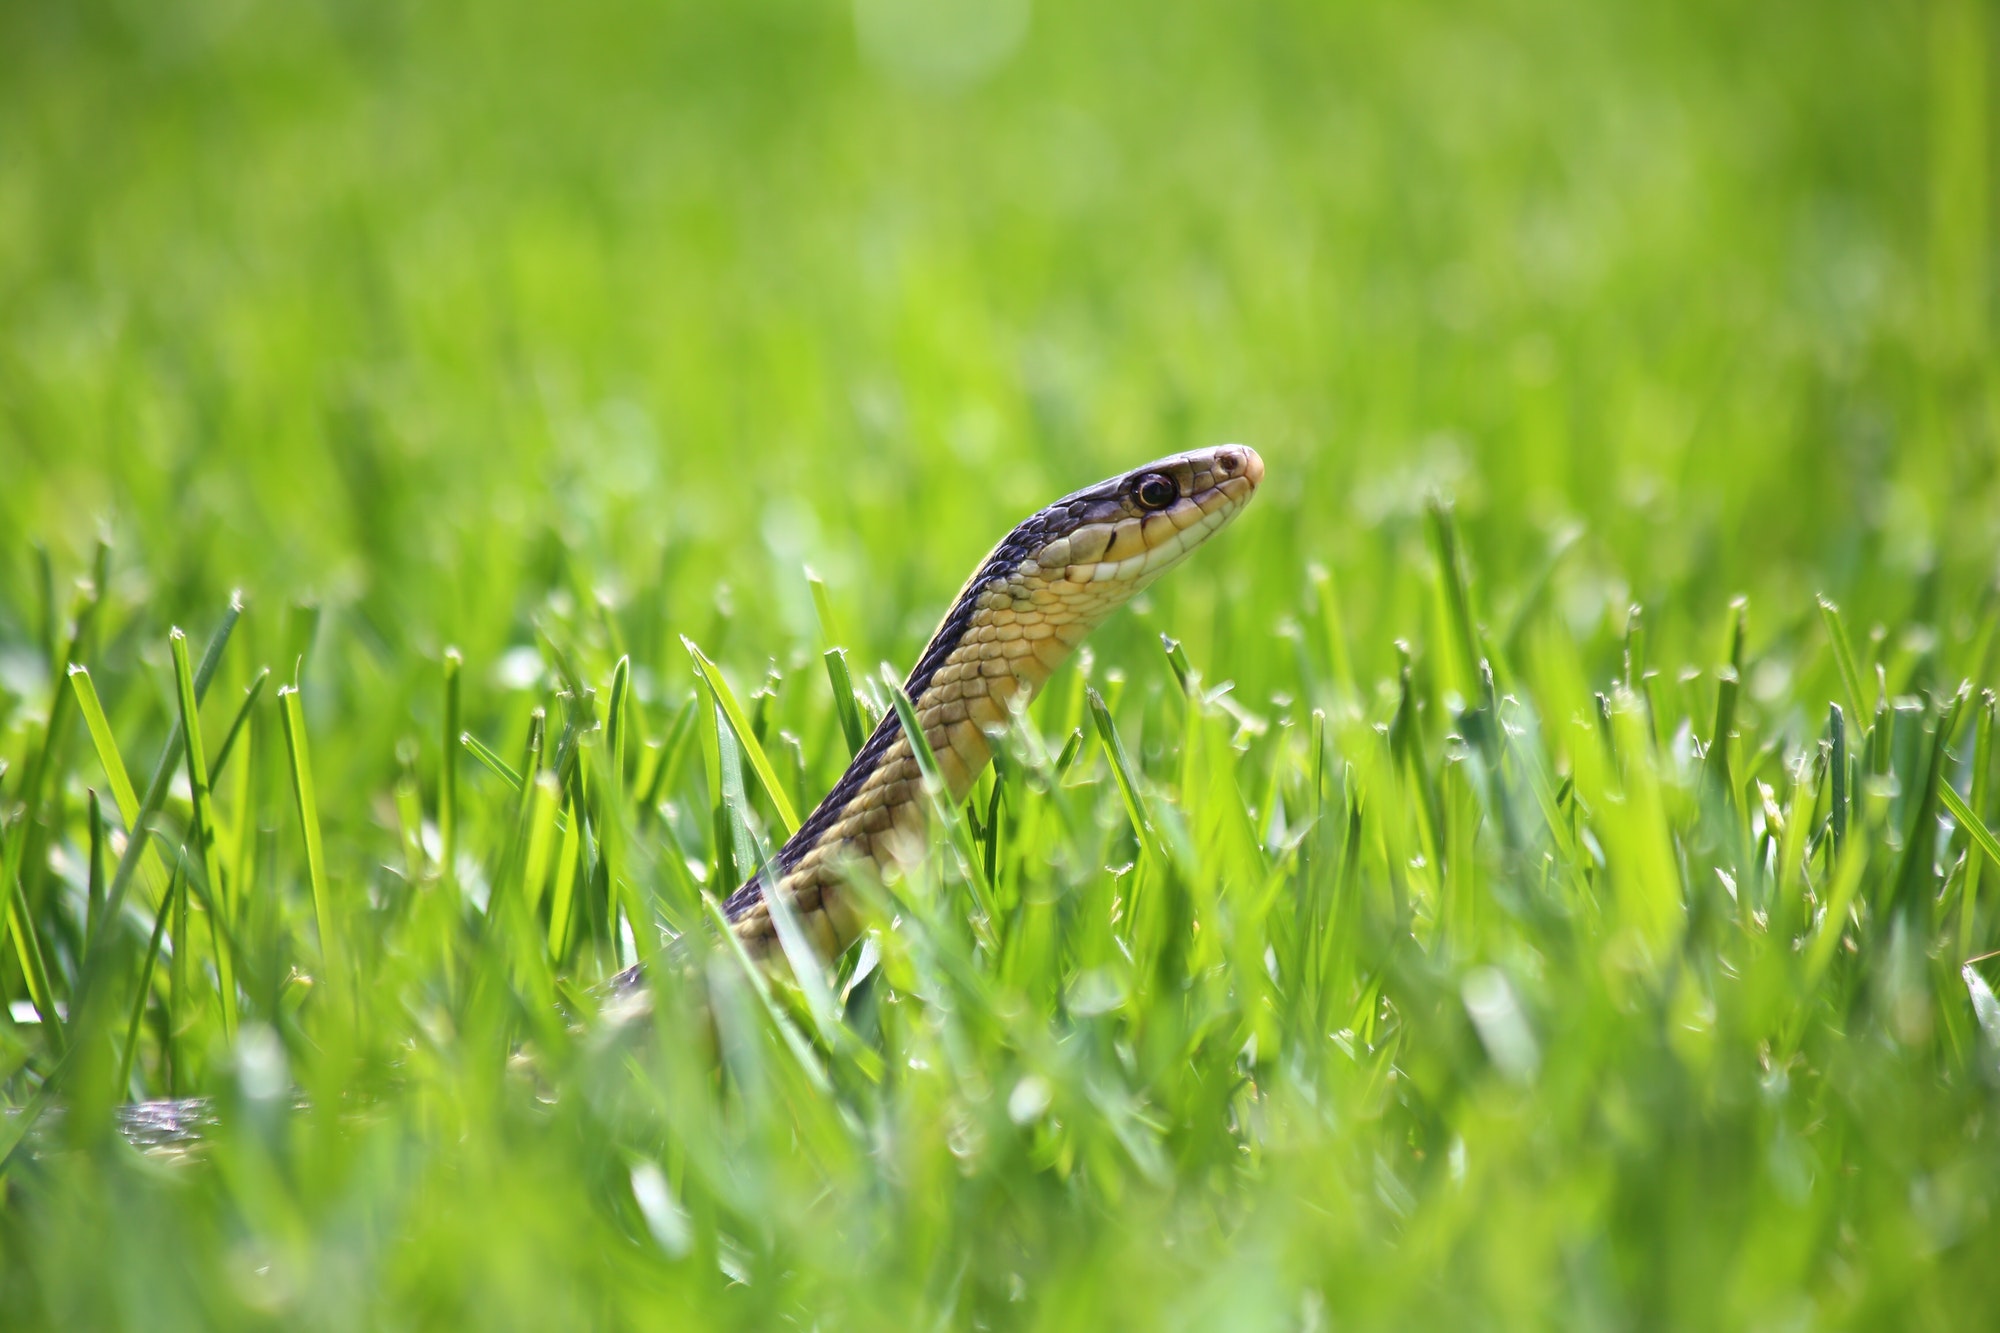 Are Garter Snakes dangerous? — Jessica’s student essay